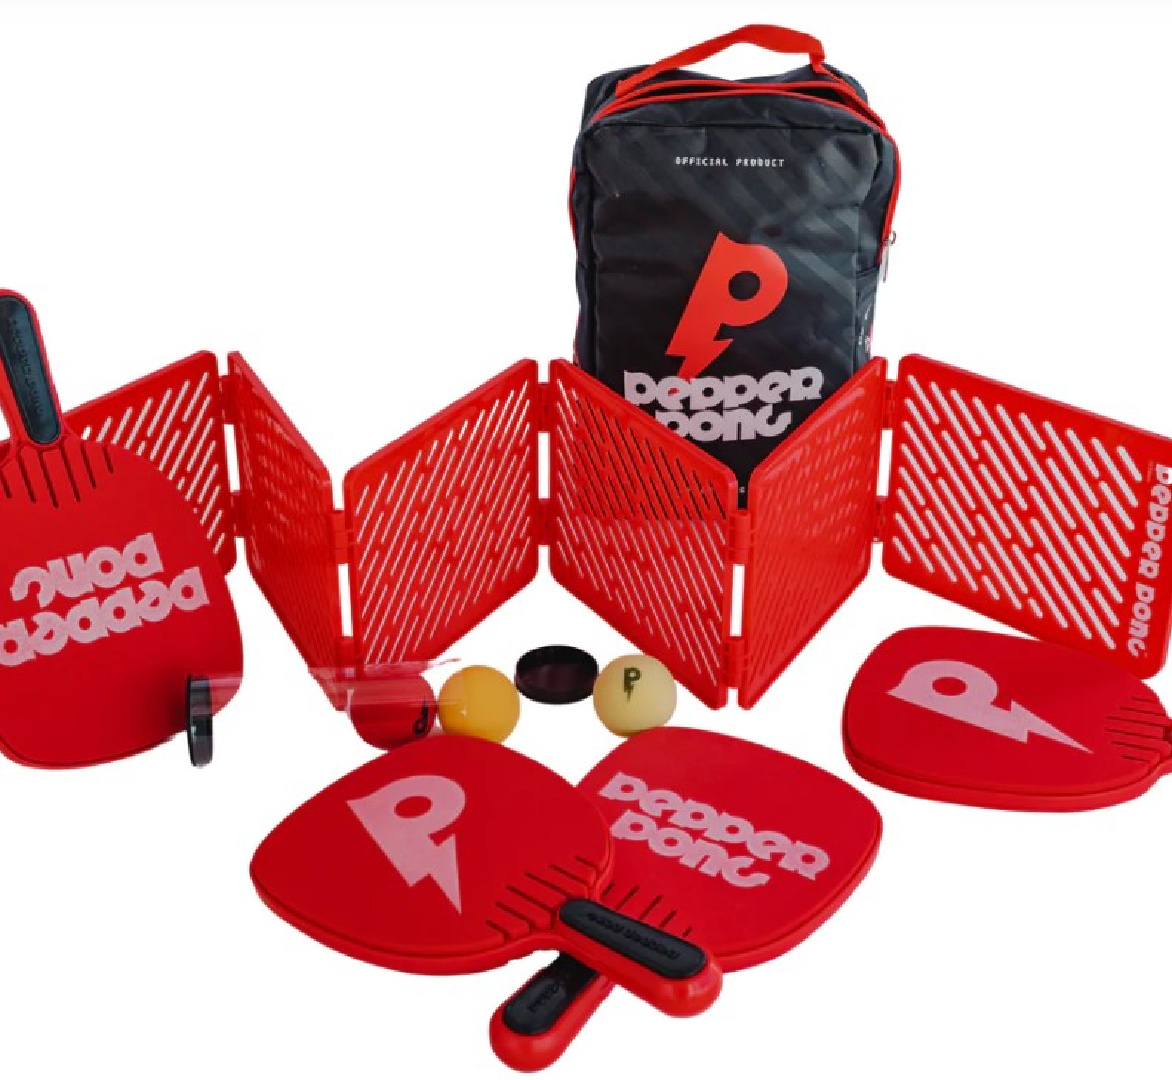 Pepper Pong - full set. #minipickleball #pickleball #pingpong